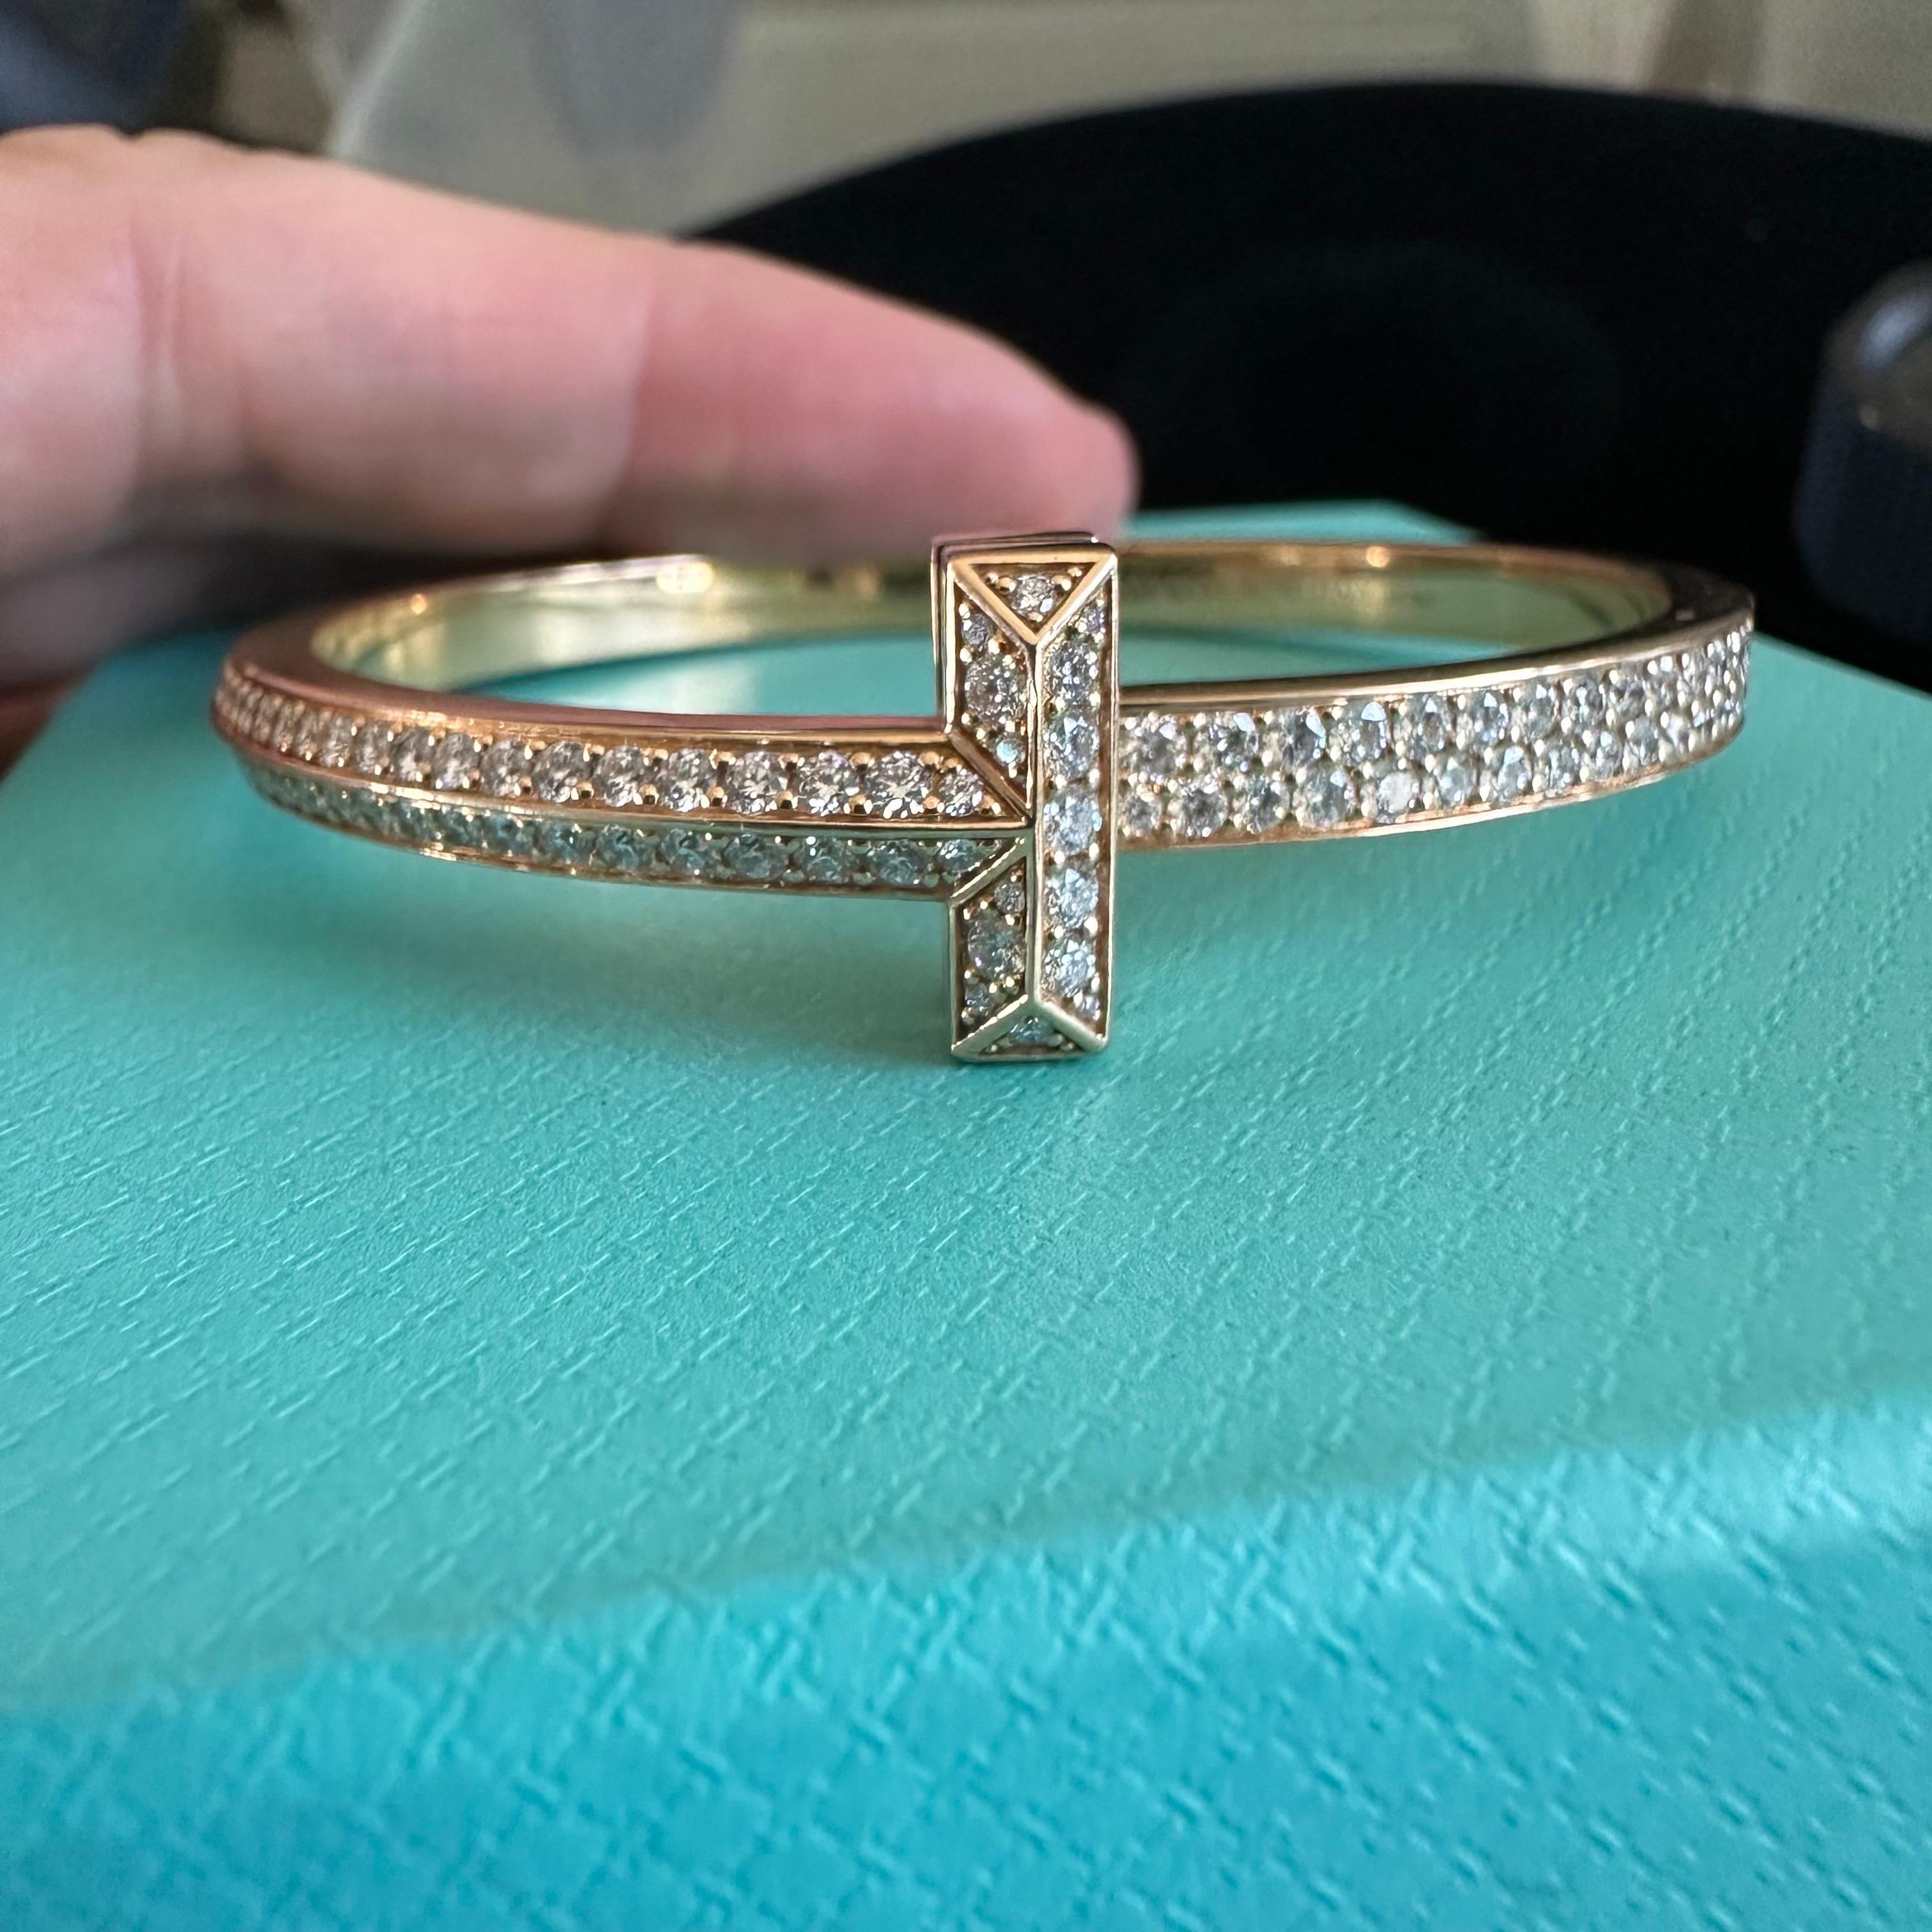 Tiffany and Co. - Bracelet T emblématique en or rose entièrement serti de diamants
Bracelet de taille moyenne de 4,08 carats de diamants de qualité DEF VVS.
Il s'agit d'un poignet de taille moyenne à petite
16 à 18 mm 


À propos du bracelet AT&T